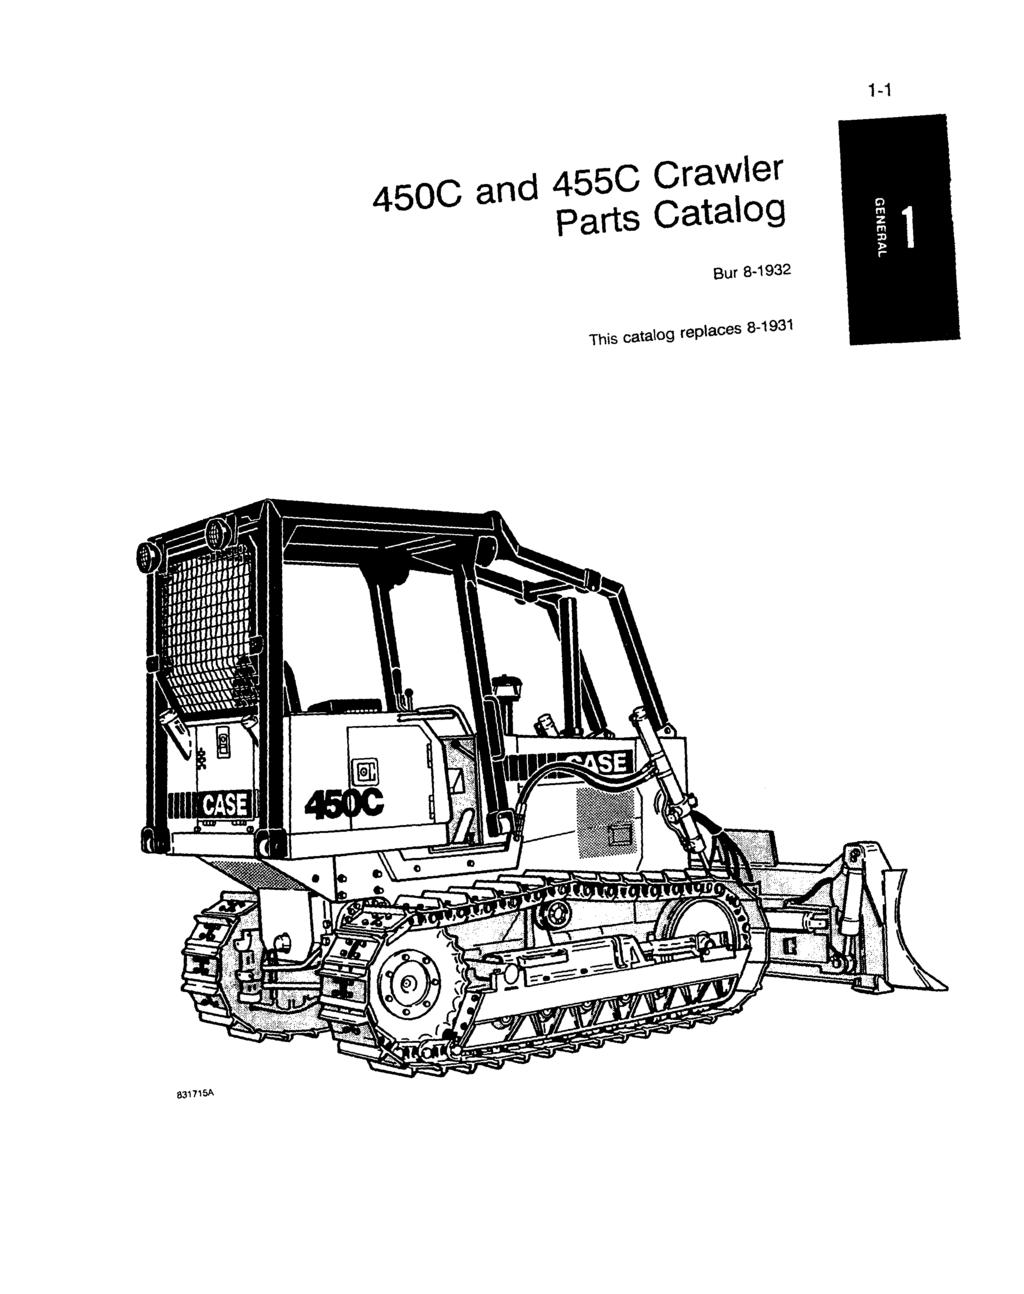 1-1 450C and 455C Crawler Parts Catalog